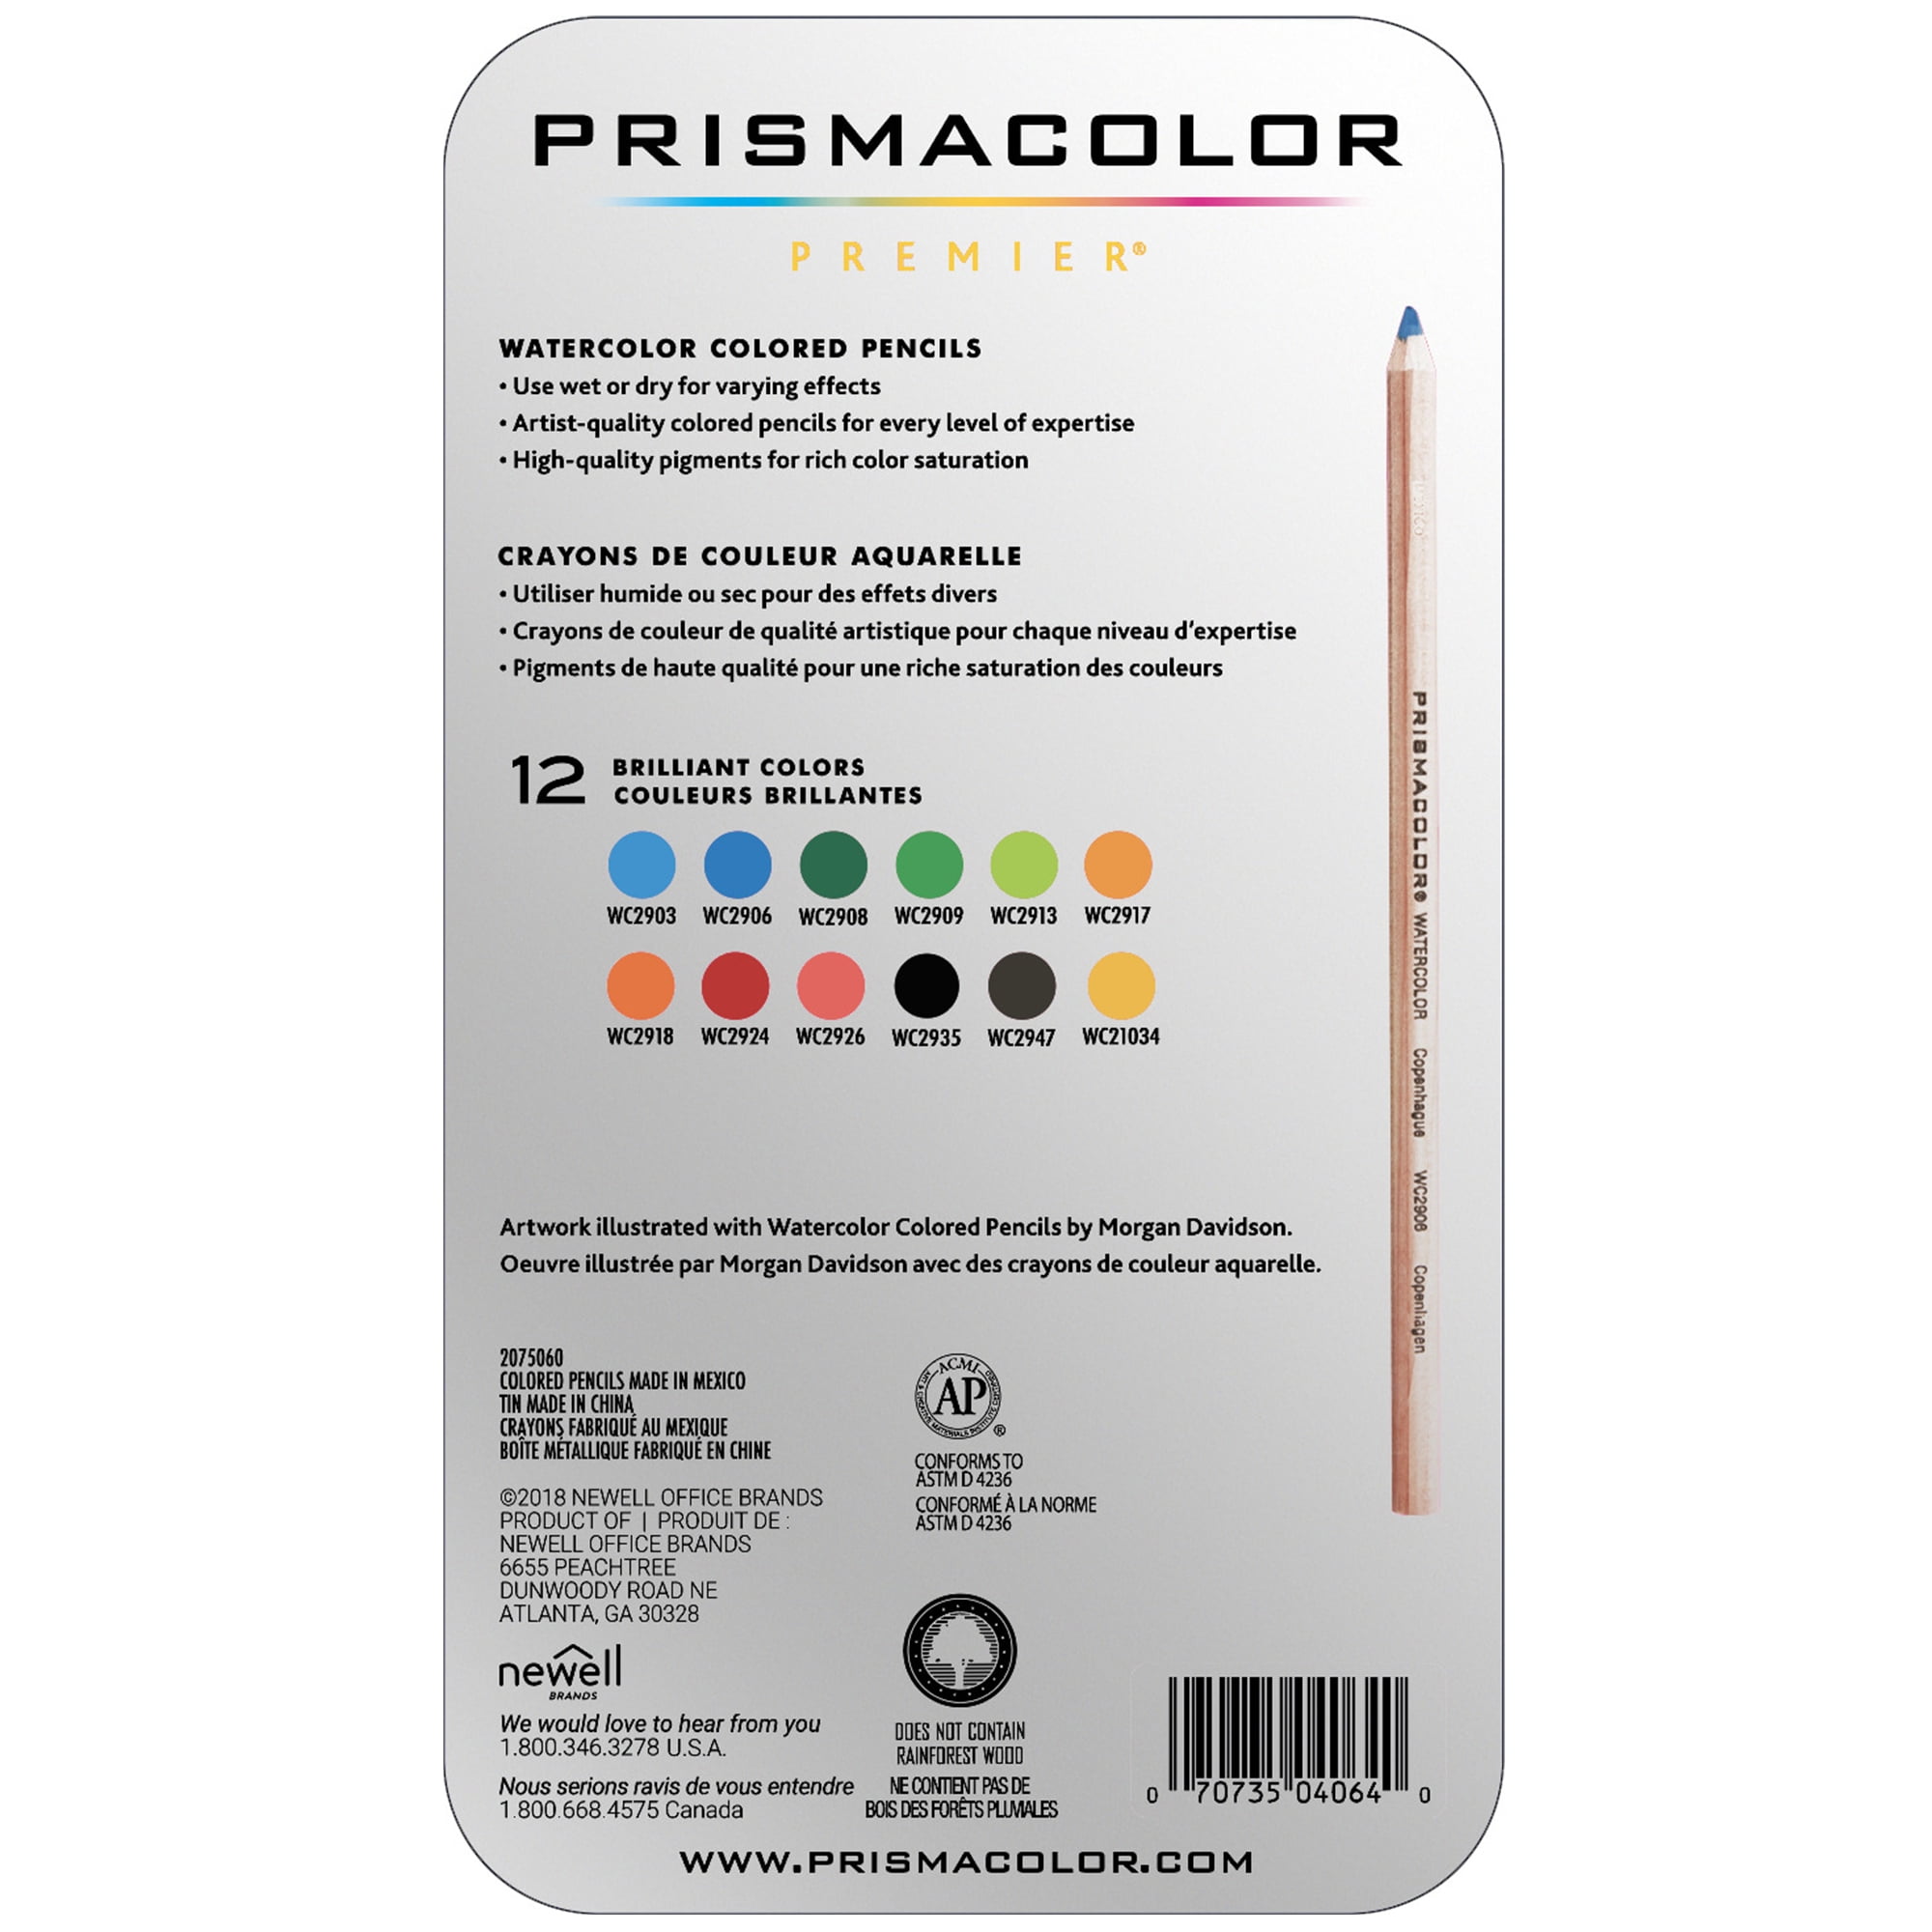 100720222: PrismaColor Watercolor Pencil 101